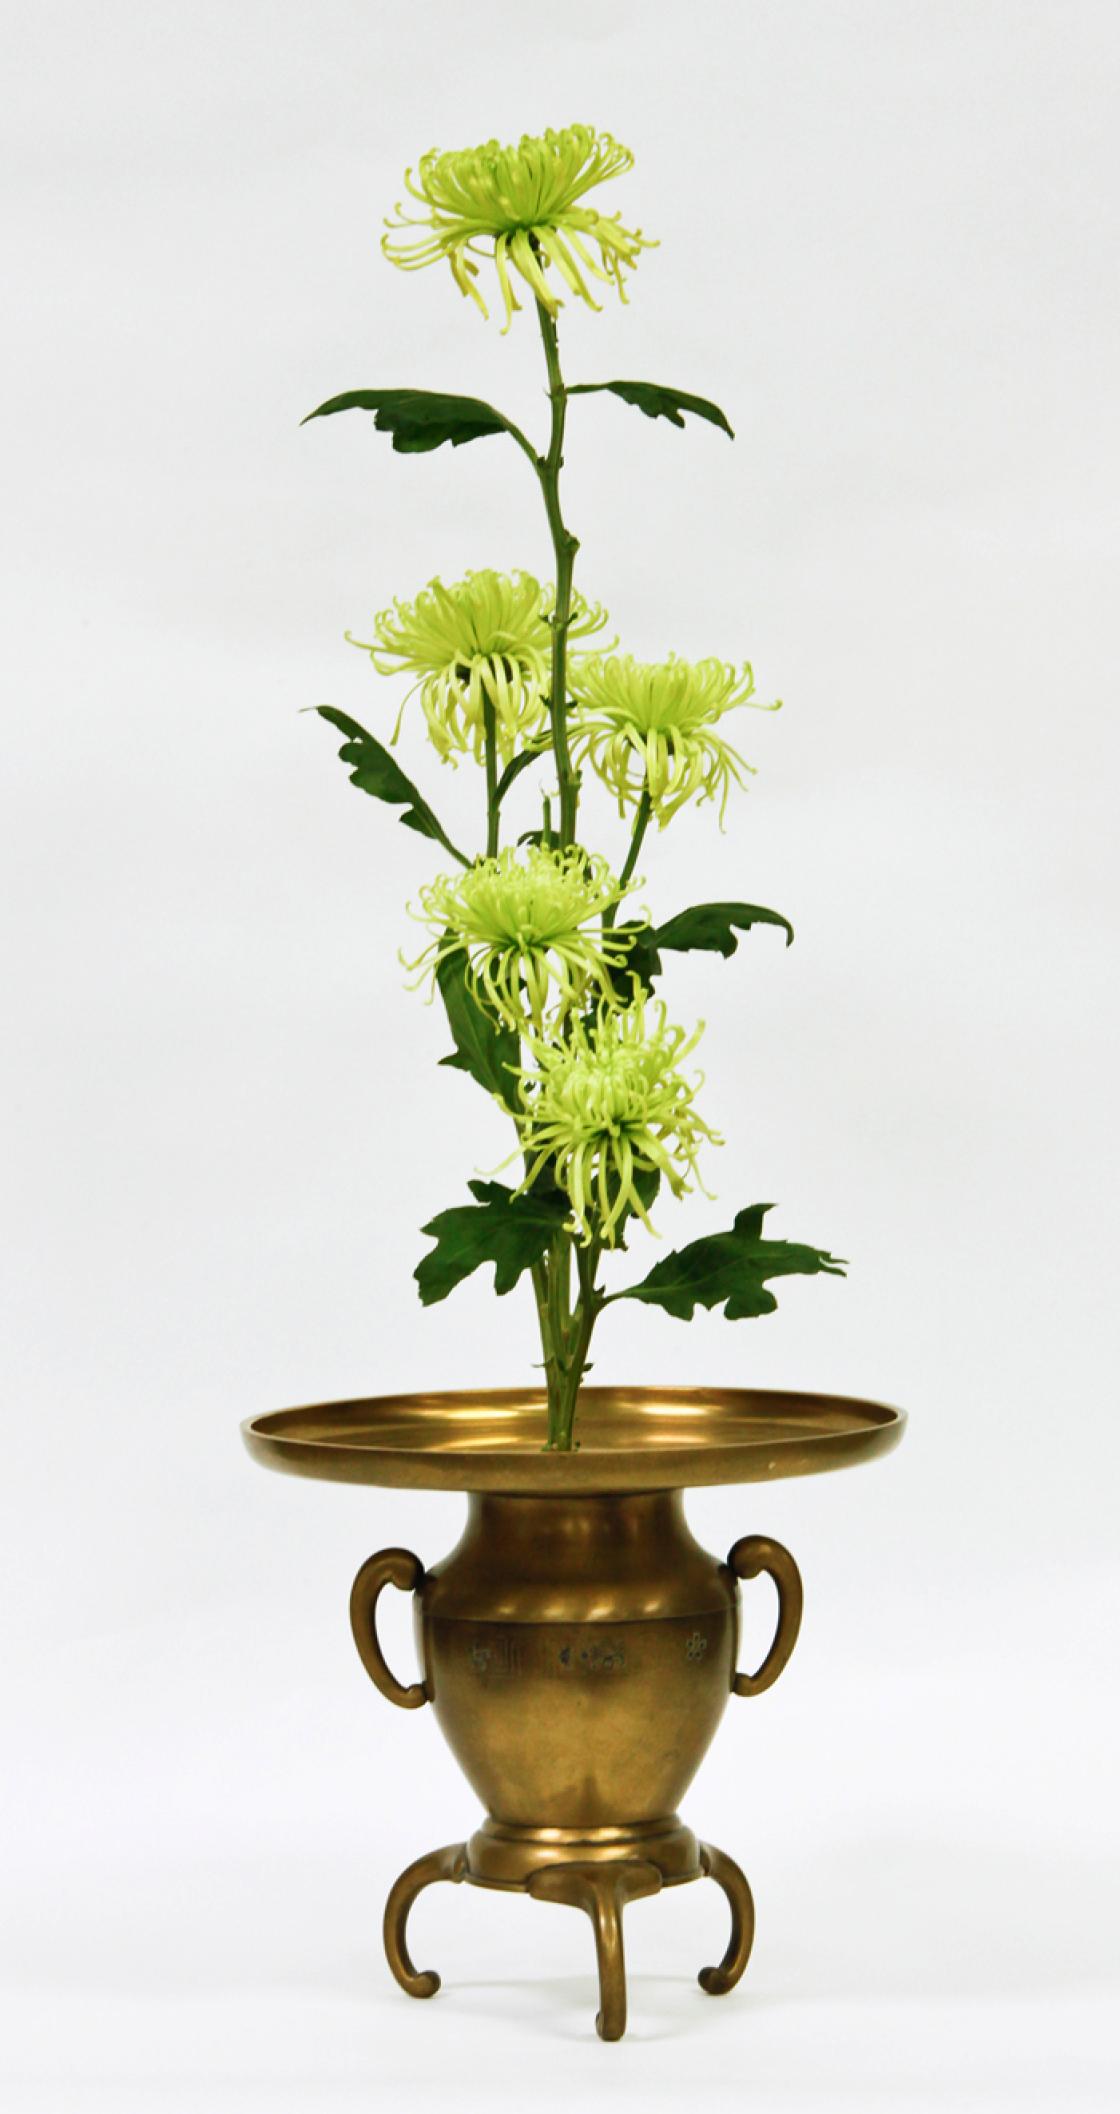 Ikebana arrangement featuring chrysanthemums